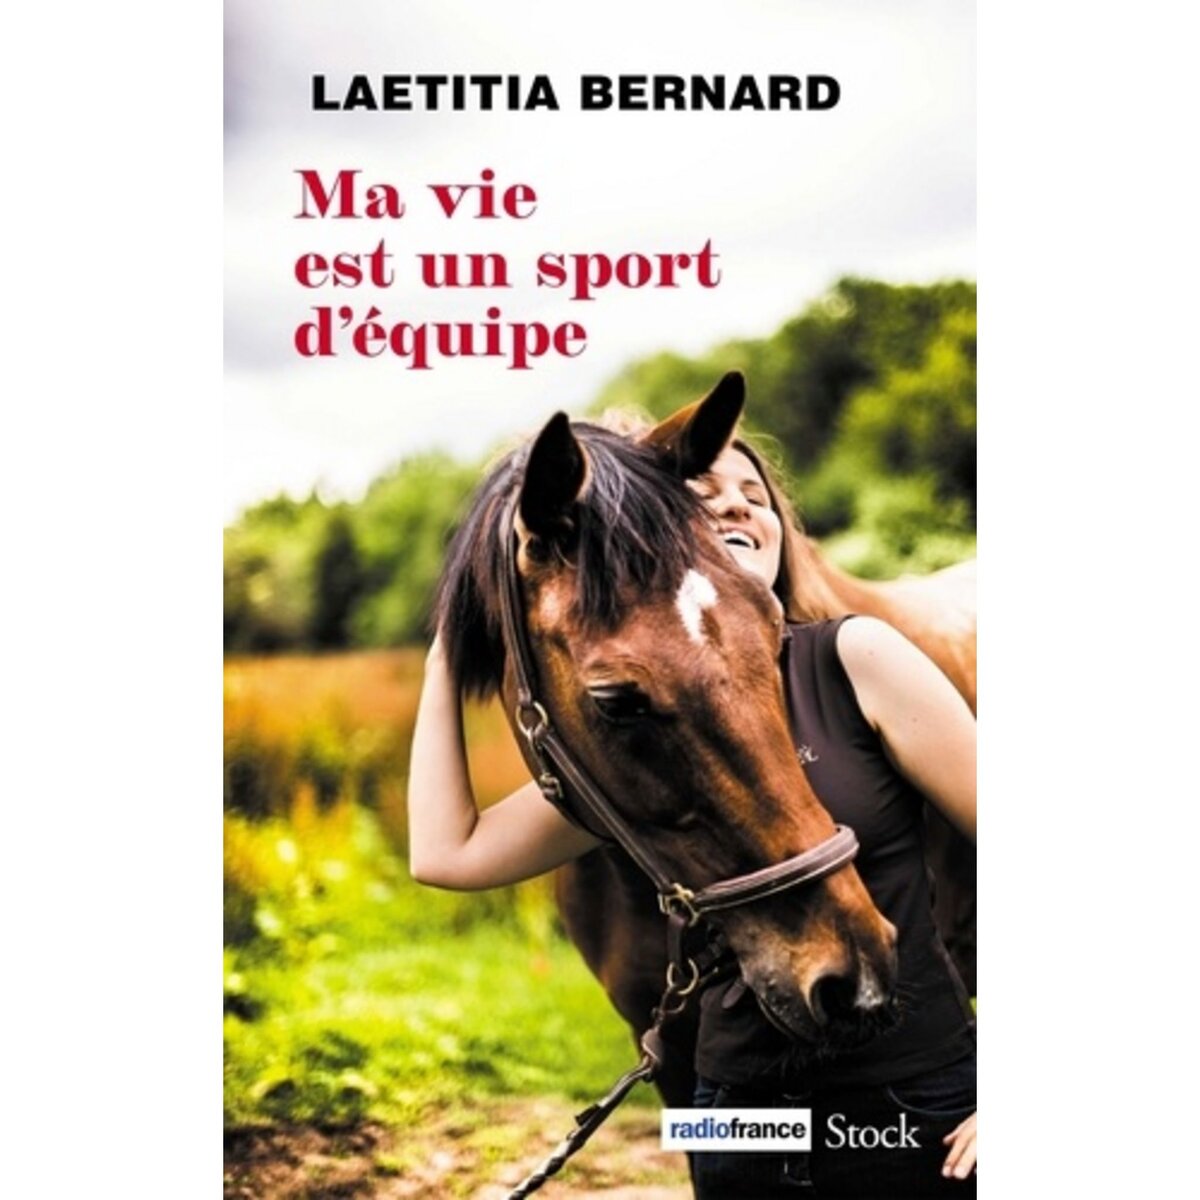  MA VIE EST UN SPORT D'EQUIPE, Bernard Laetitia